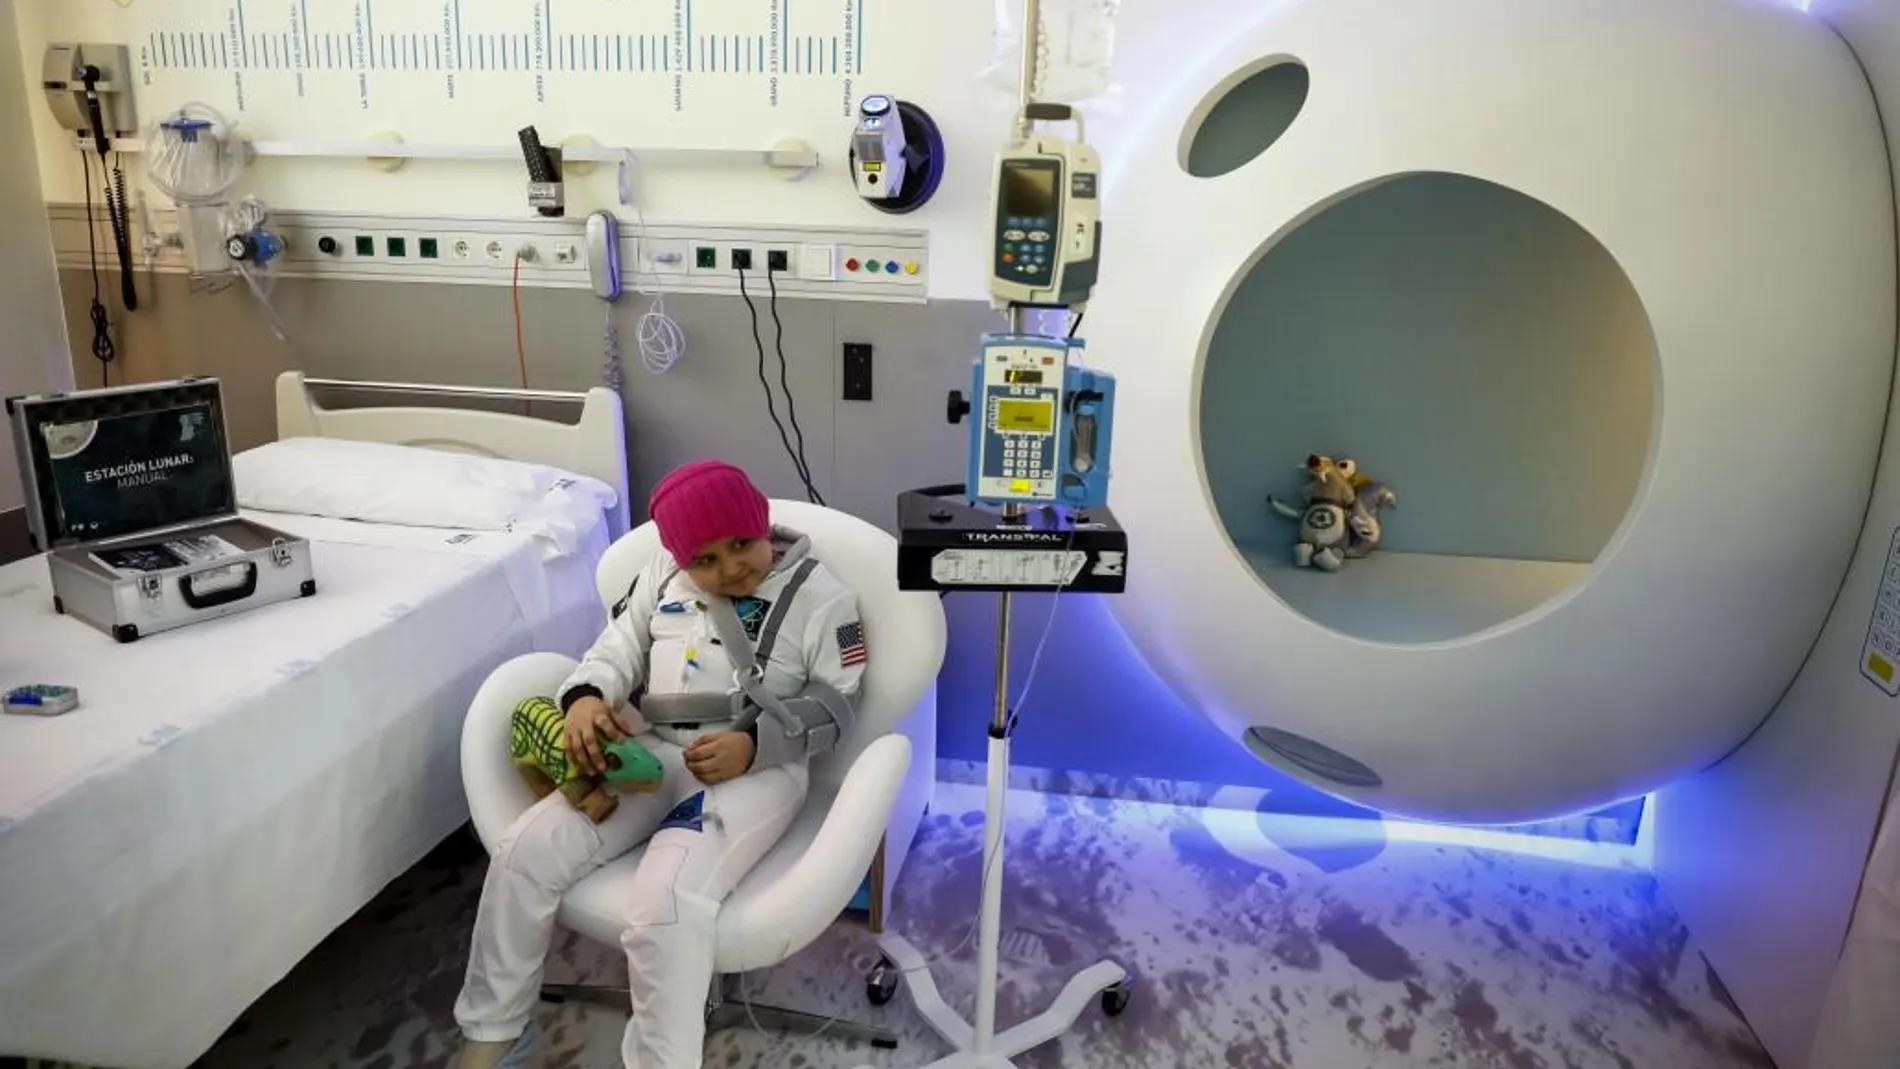 Una habitación de aislamiento que recrea una estación lunar y permite a los niños ingresados tener una experiencia interactiva y educativa